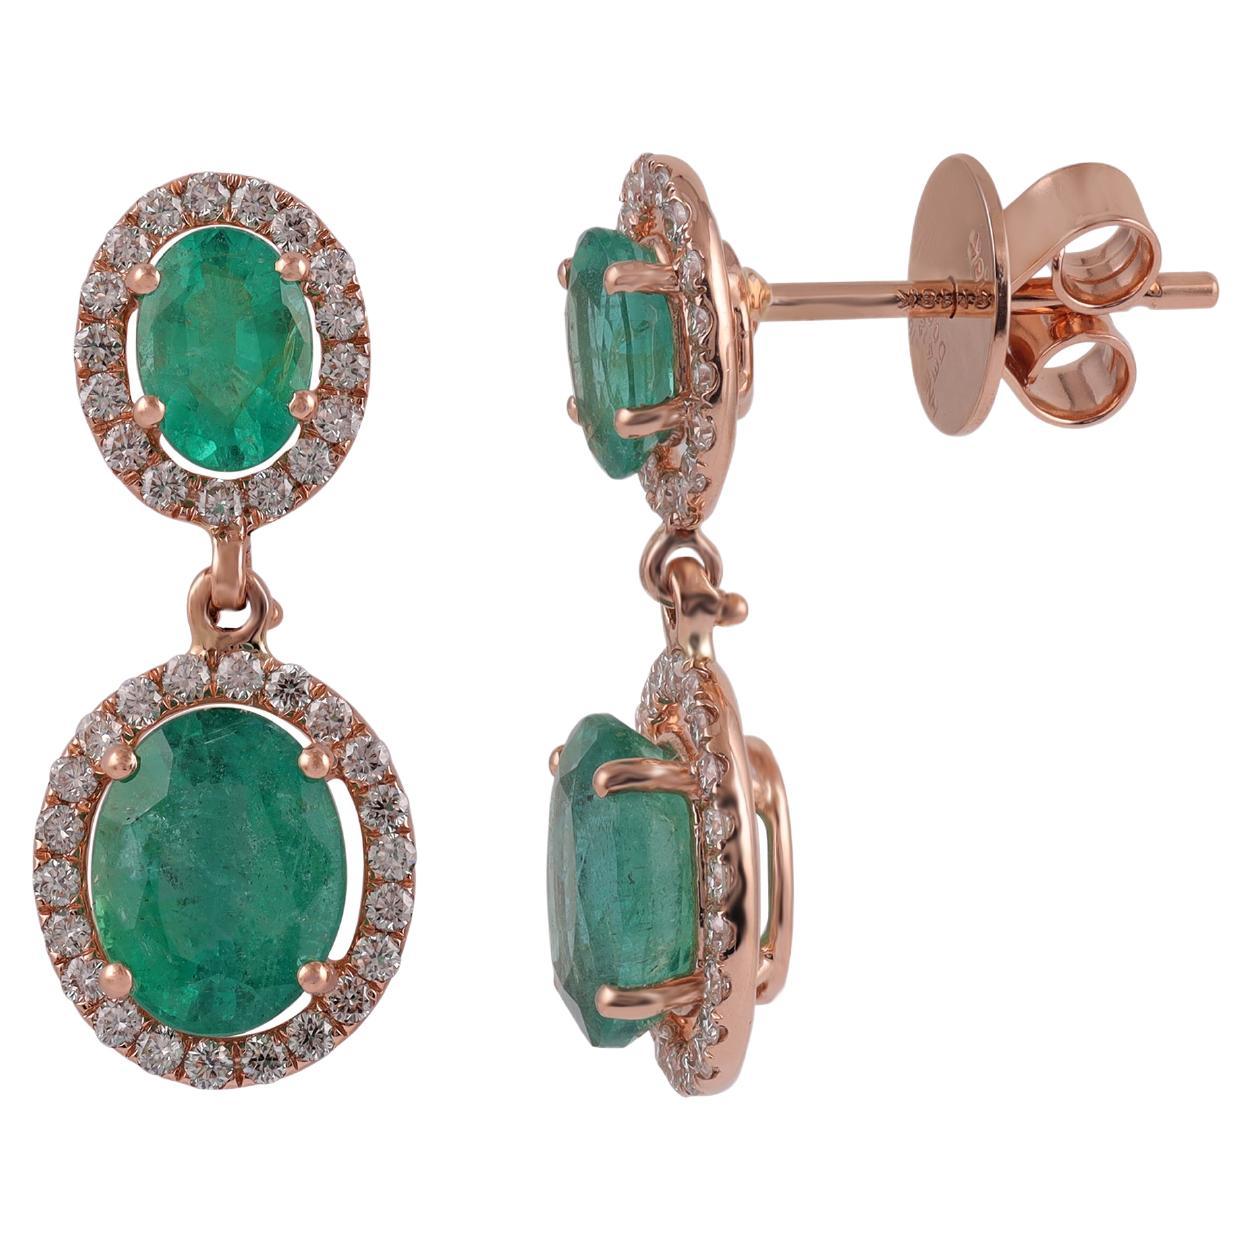 4.12 Carat Zambian Emerald & Diamond Stud Earrings in 18k Gold